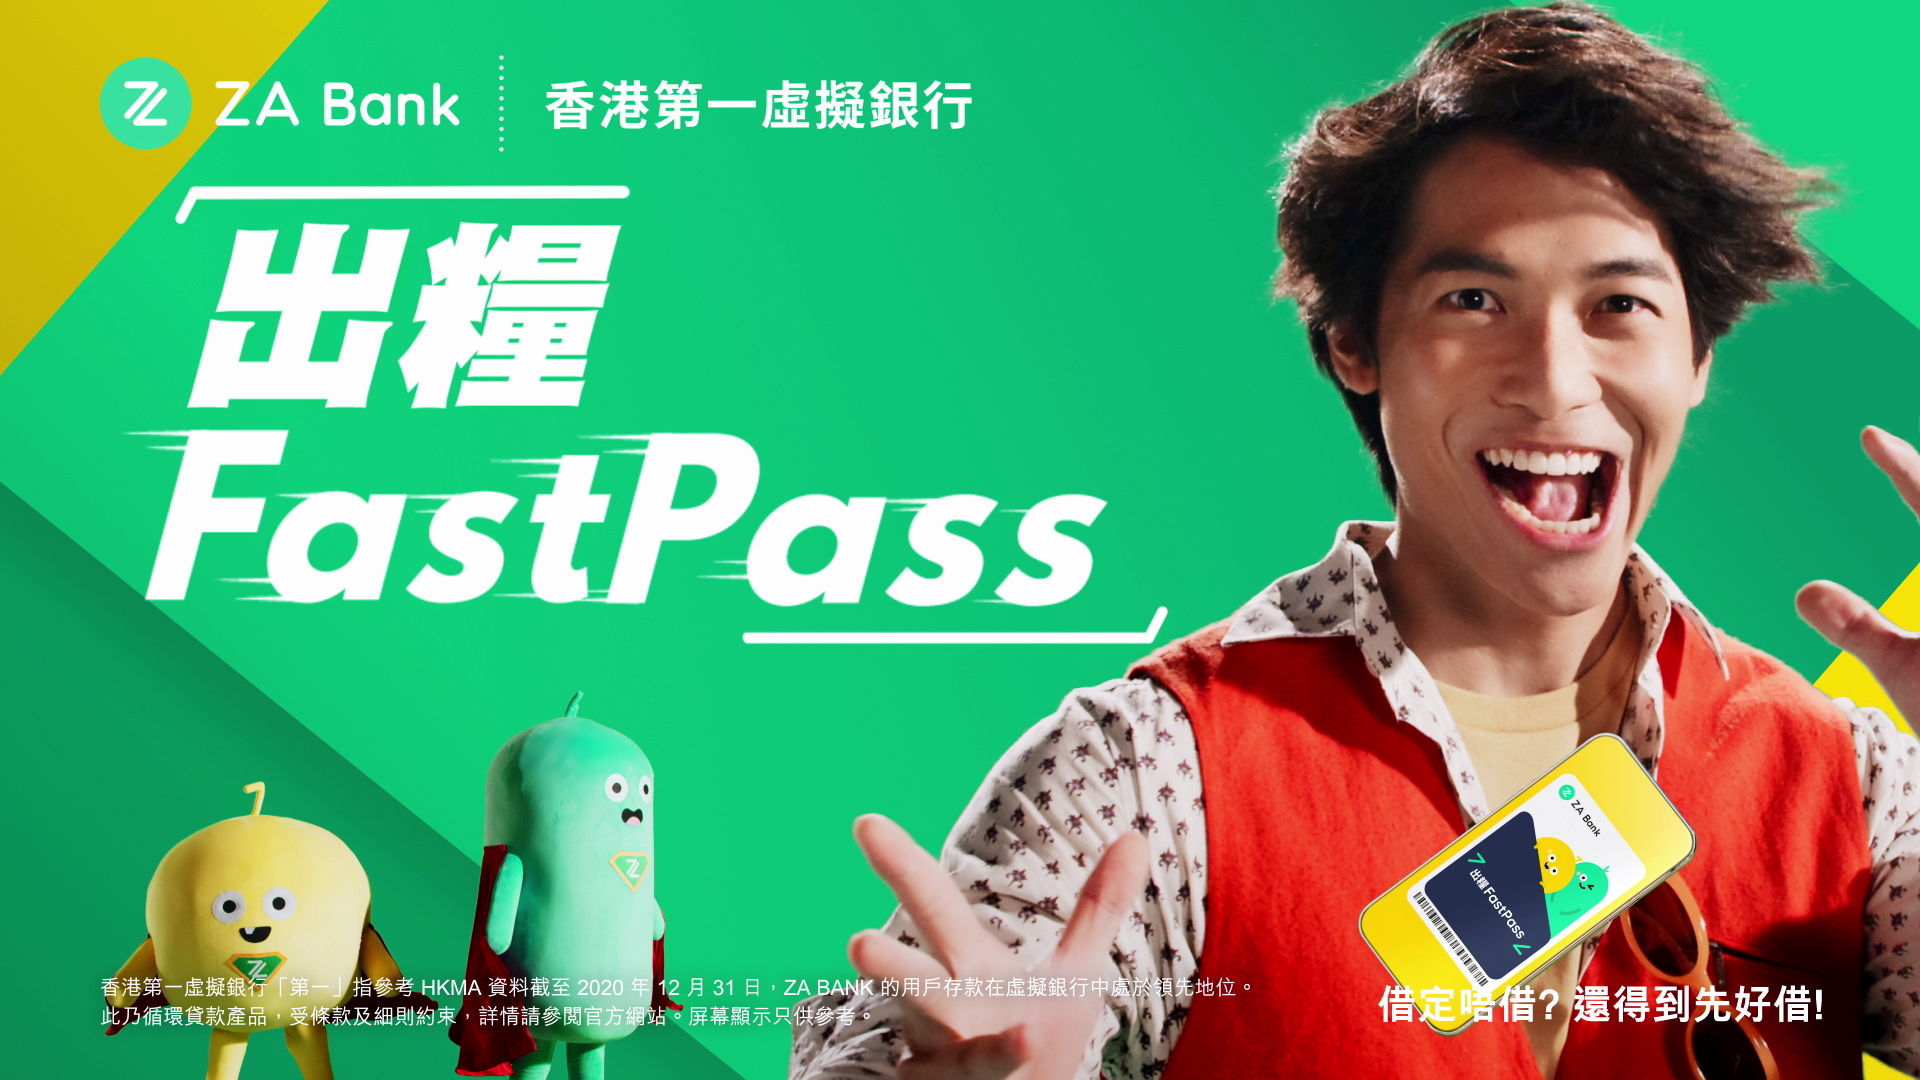 【ZA Bank】出糧 FastPass — 提早 7 日出糧方案 🤩 早出糧～爽！